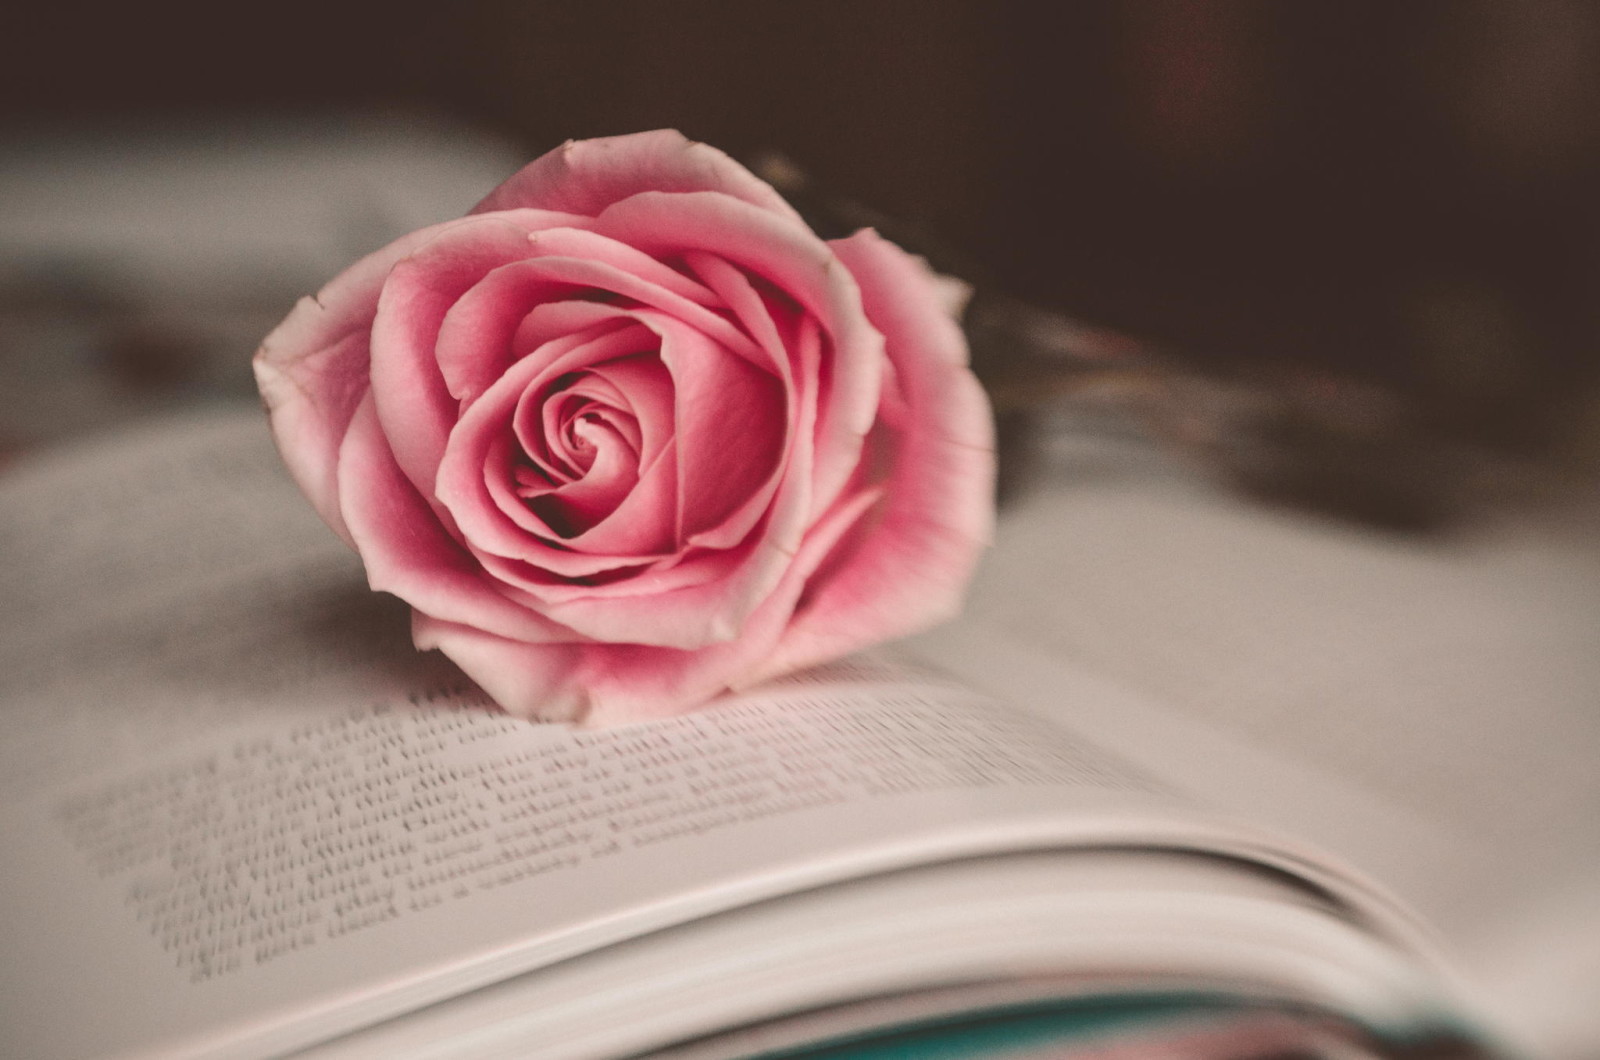 vĩ mô, Hồng, Hoa hồng, bông hoa, sách